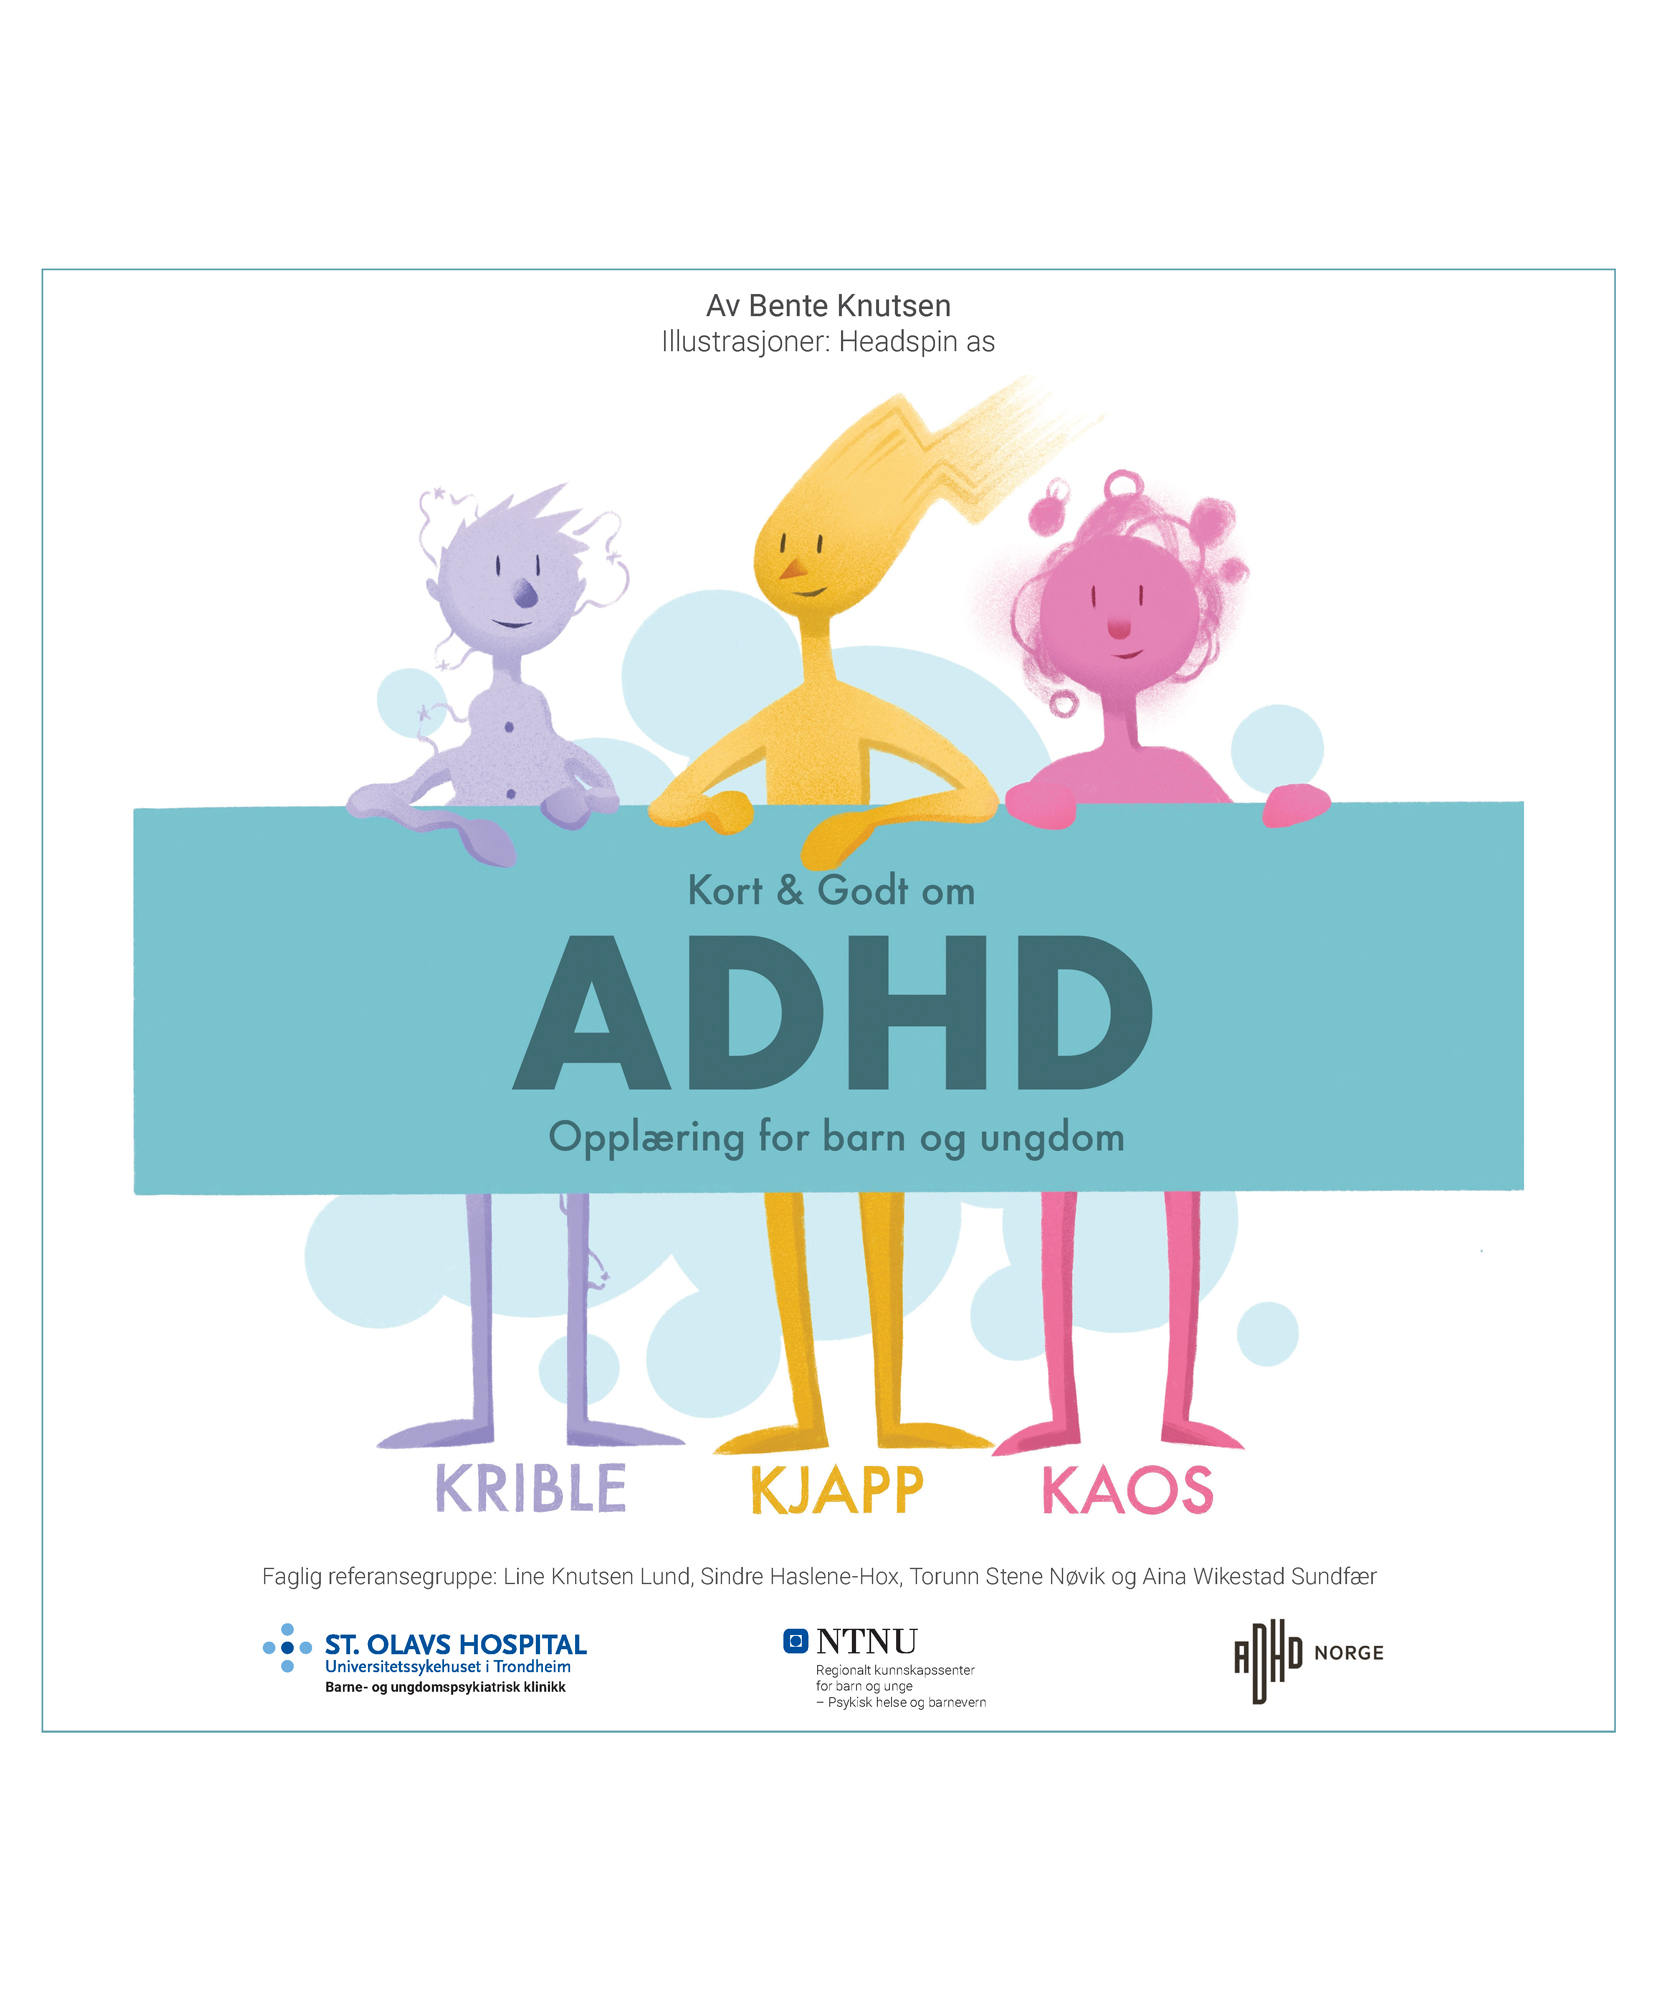 Se Kort & Godt om ADHD – Startpakken i fire deler